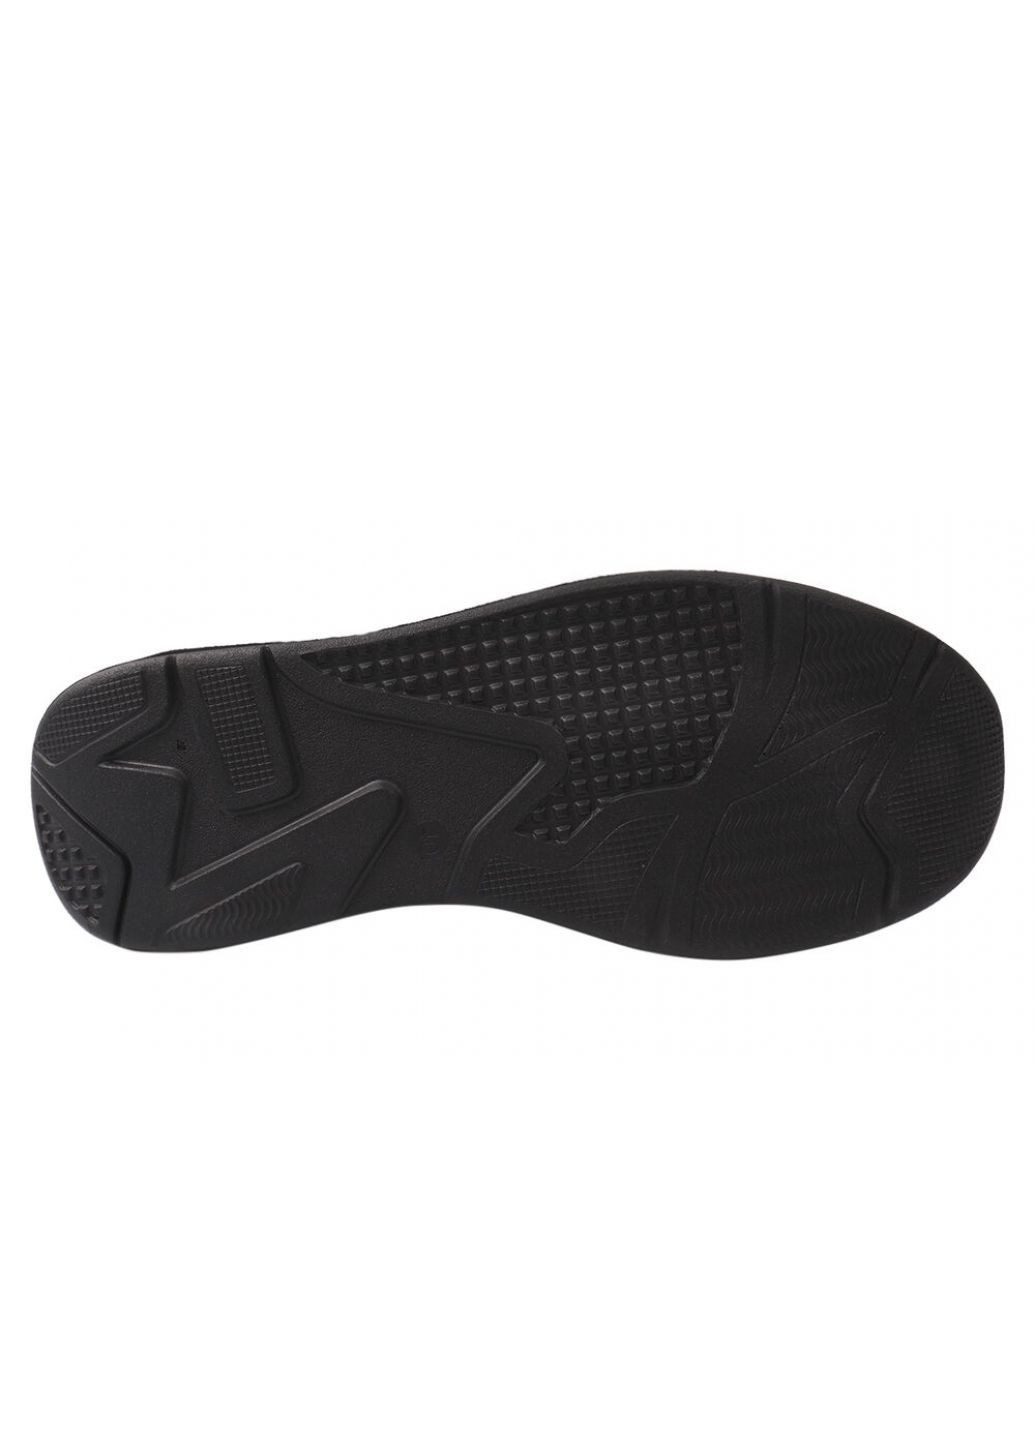 Черные кроссовки мужские из натуральной кожи, на шнуровке, черные, украина Konors 527-21/22DTS